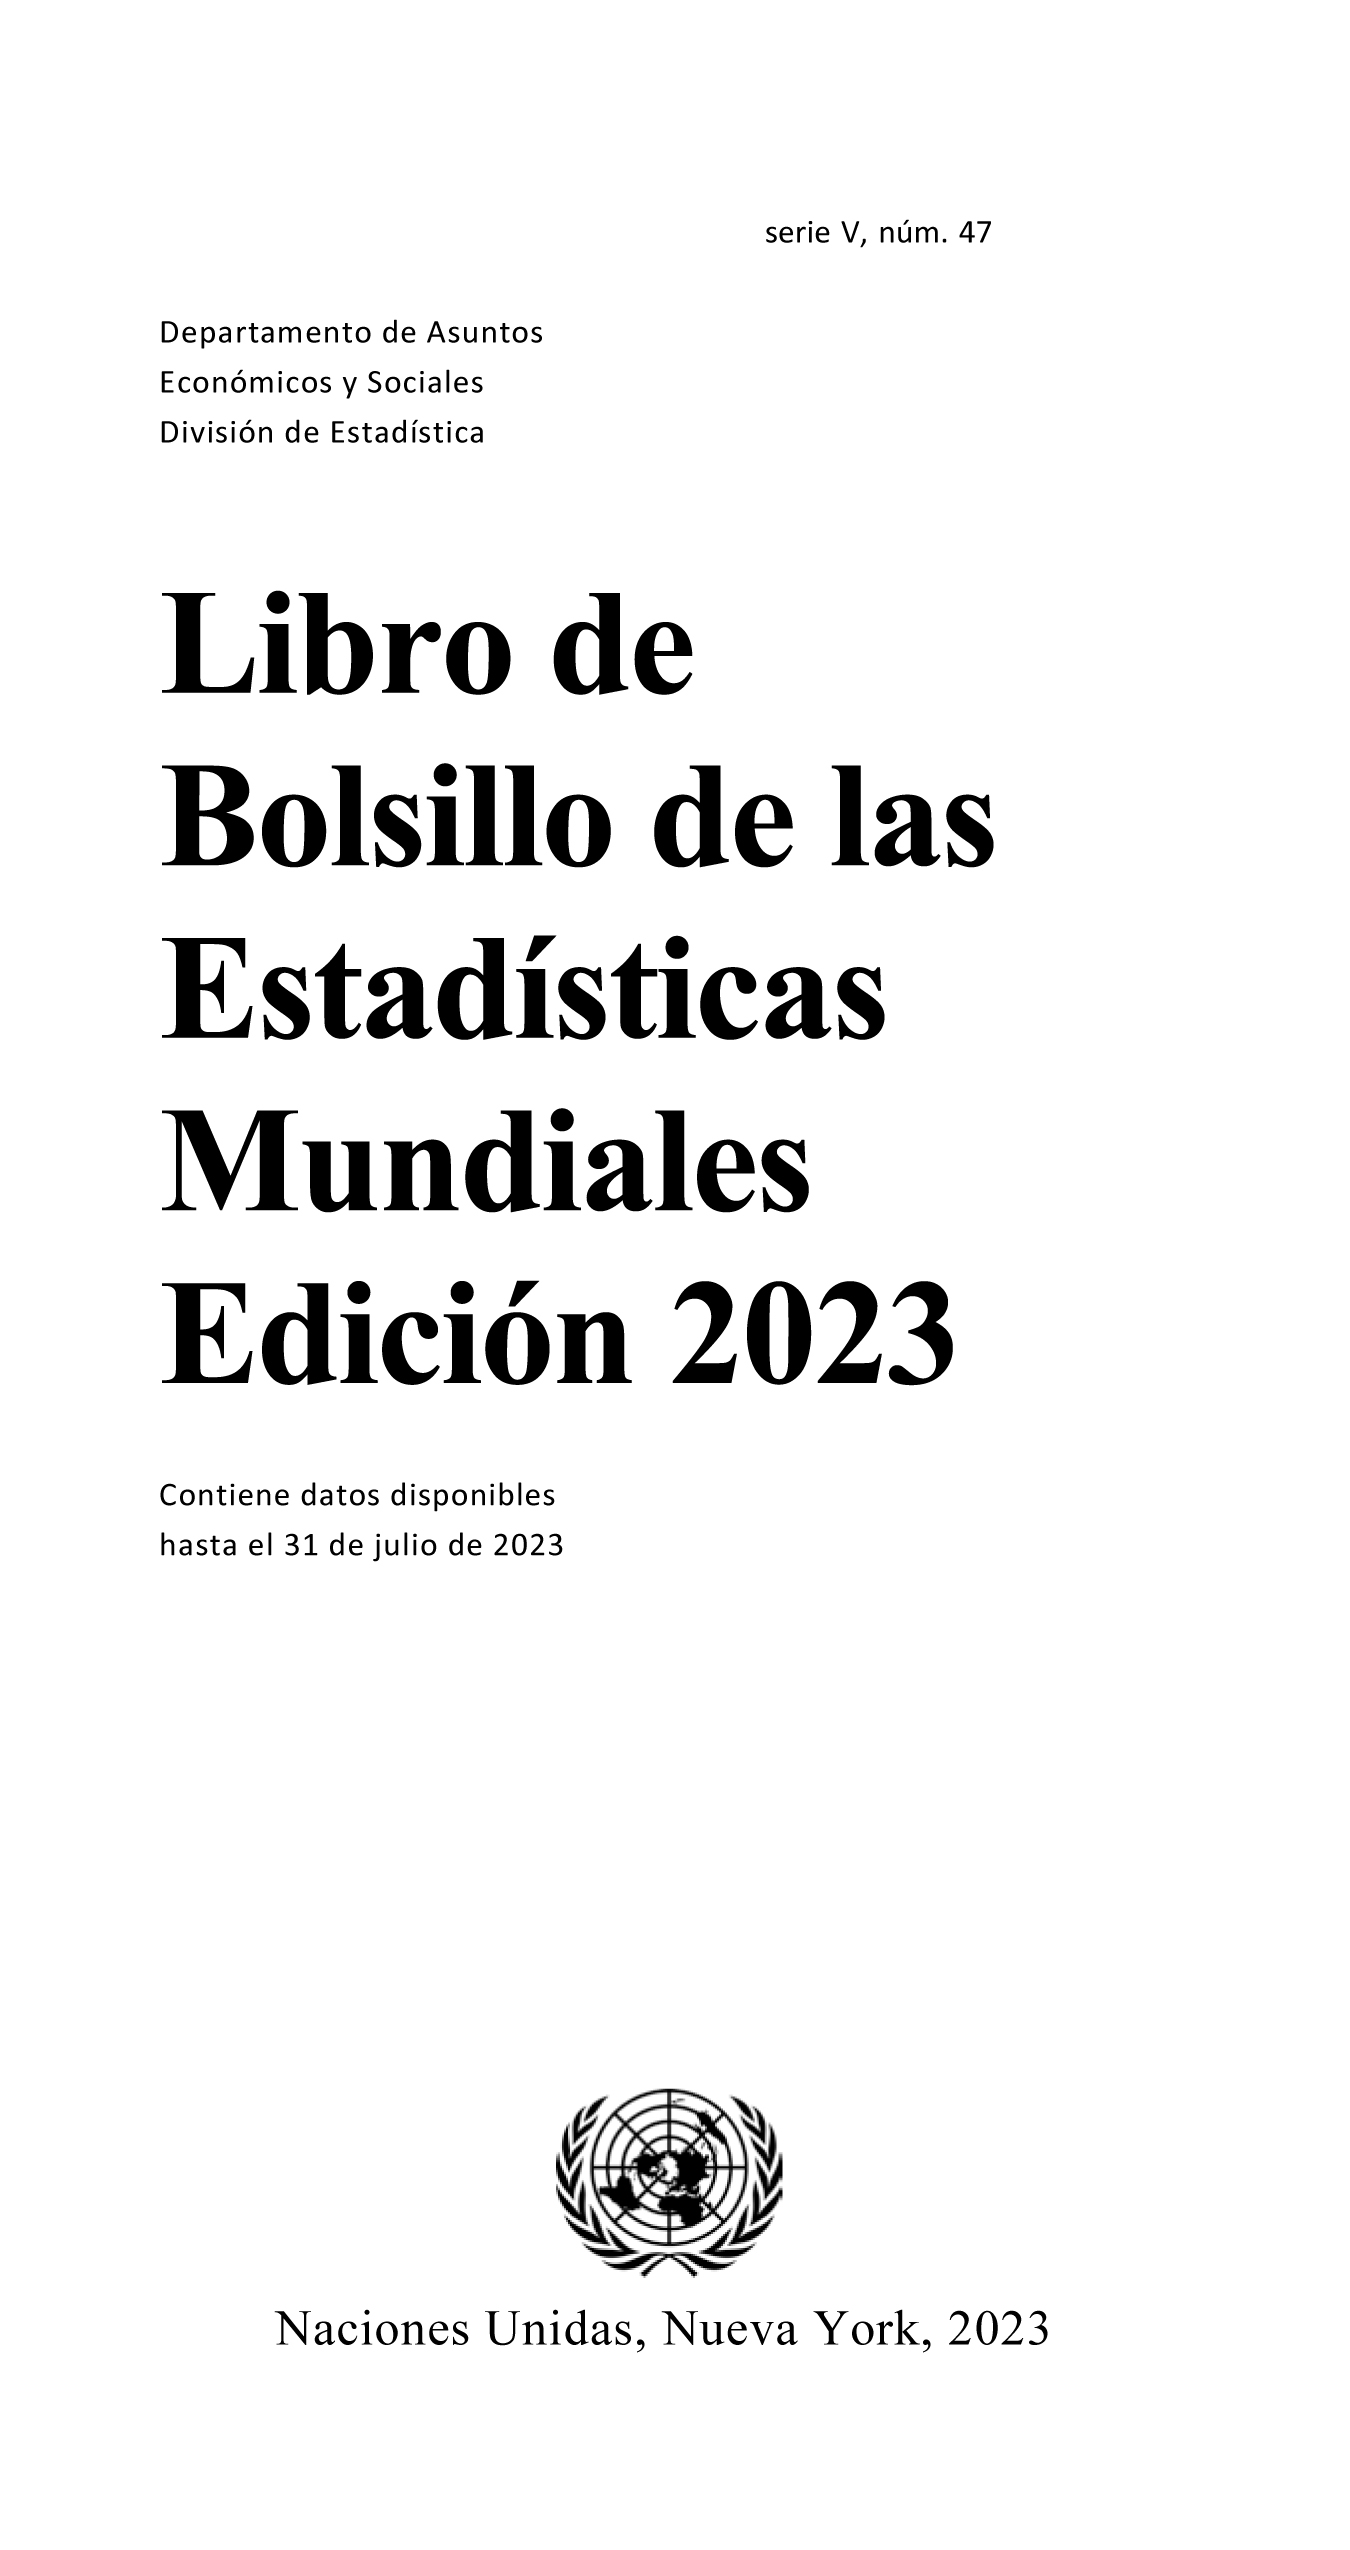 image of Libro de bolsillo de las estadisticas mundiales 2023